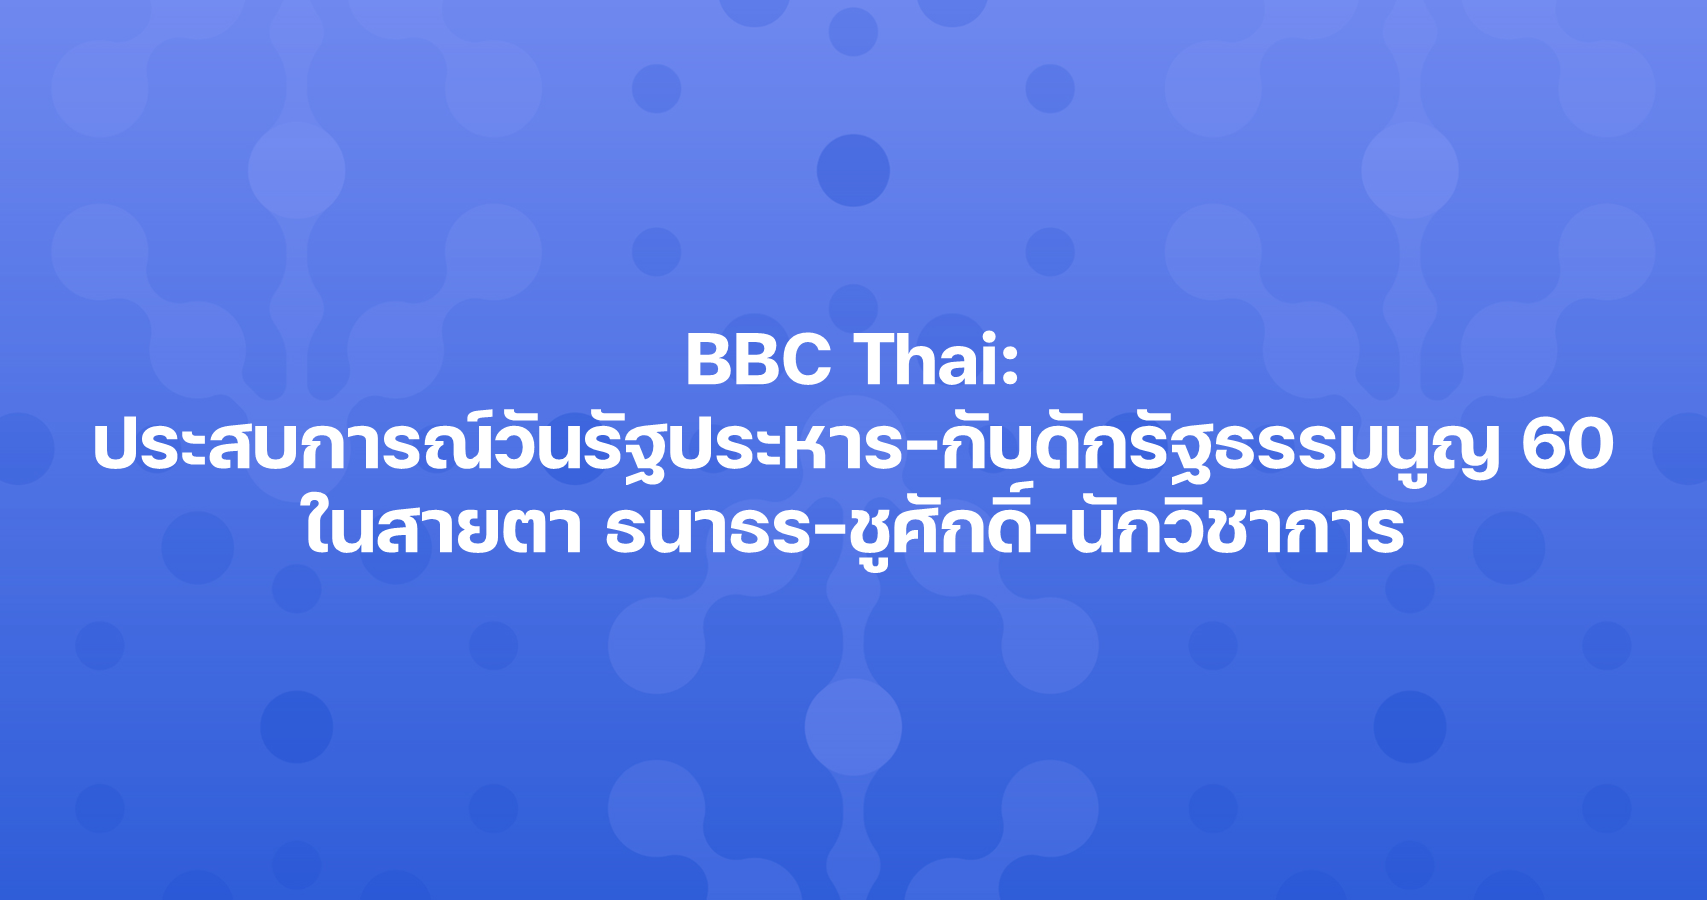 BBC Thai: ประสบการณ์วันรัฐประหาร-กับดักรัฐธรรมนูญ 60 ในสายตา ธนาธร-ชูศักดิ์-นักวิชาการ